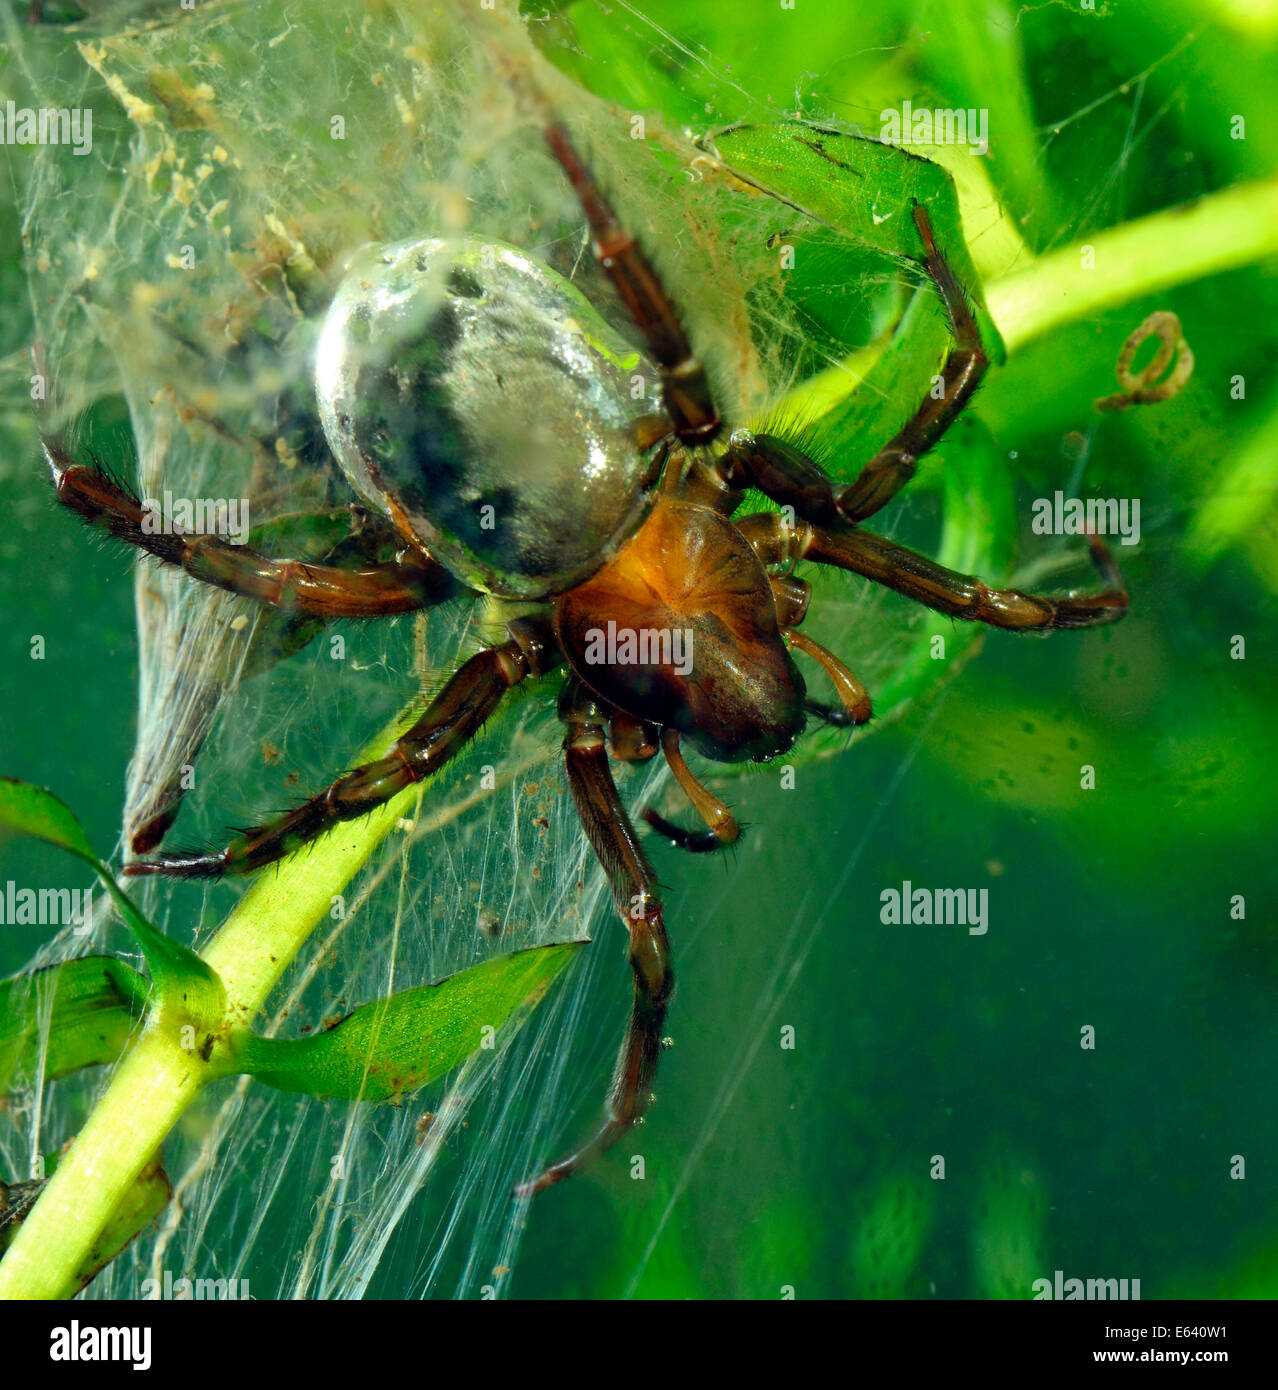 Araignée d'eau ou Scaphandre (Argyroneta aquatica araignée), Allemagne Banque D'Images